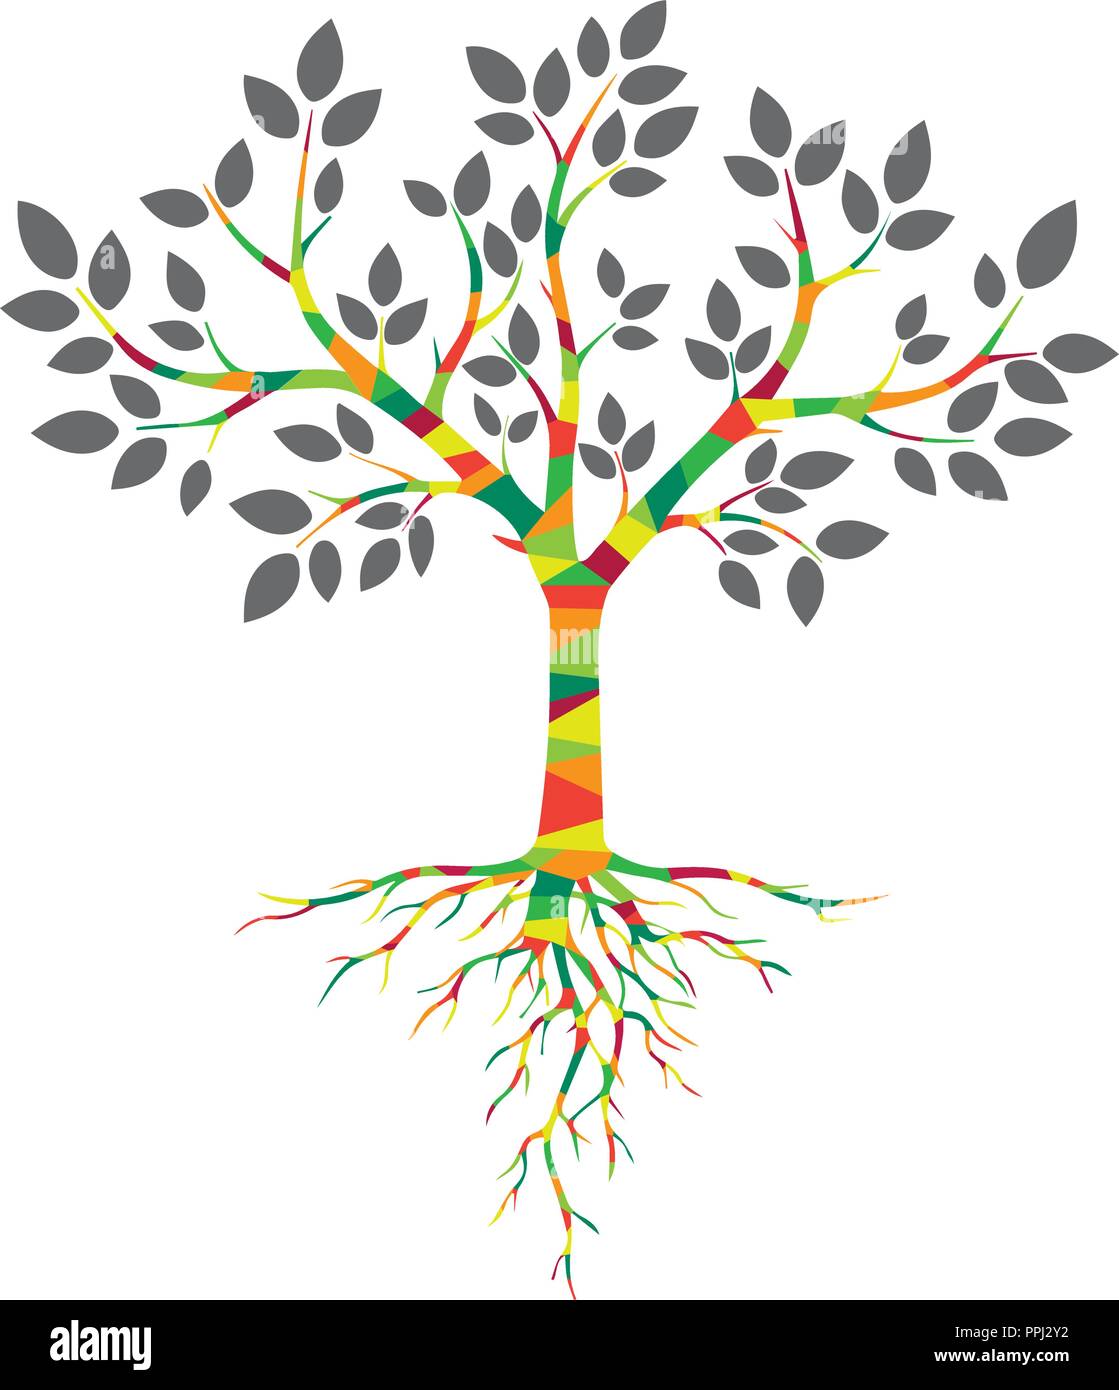 Farbige Baum mit Wurzeln und Blättern Stock Vektor